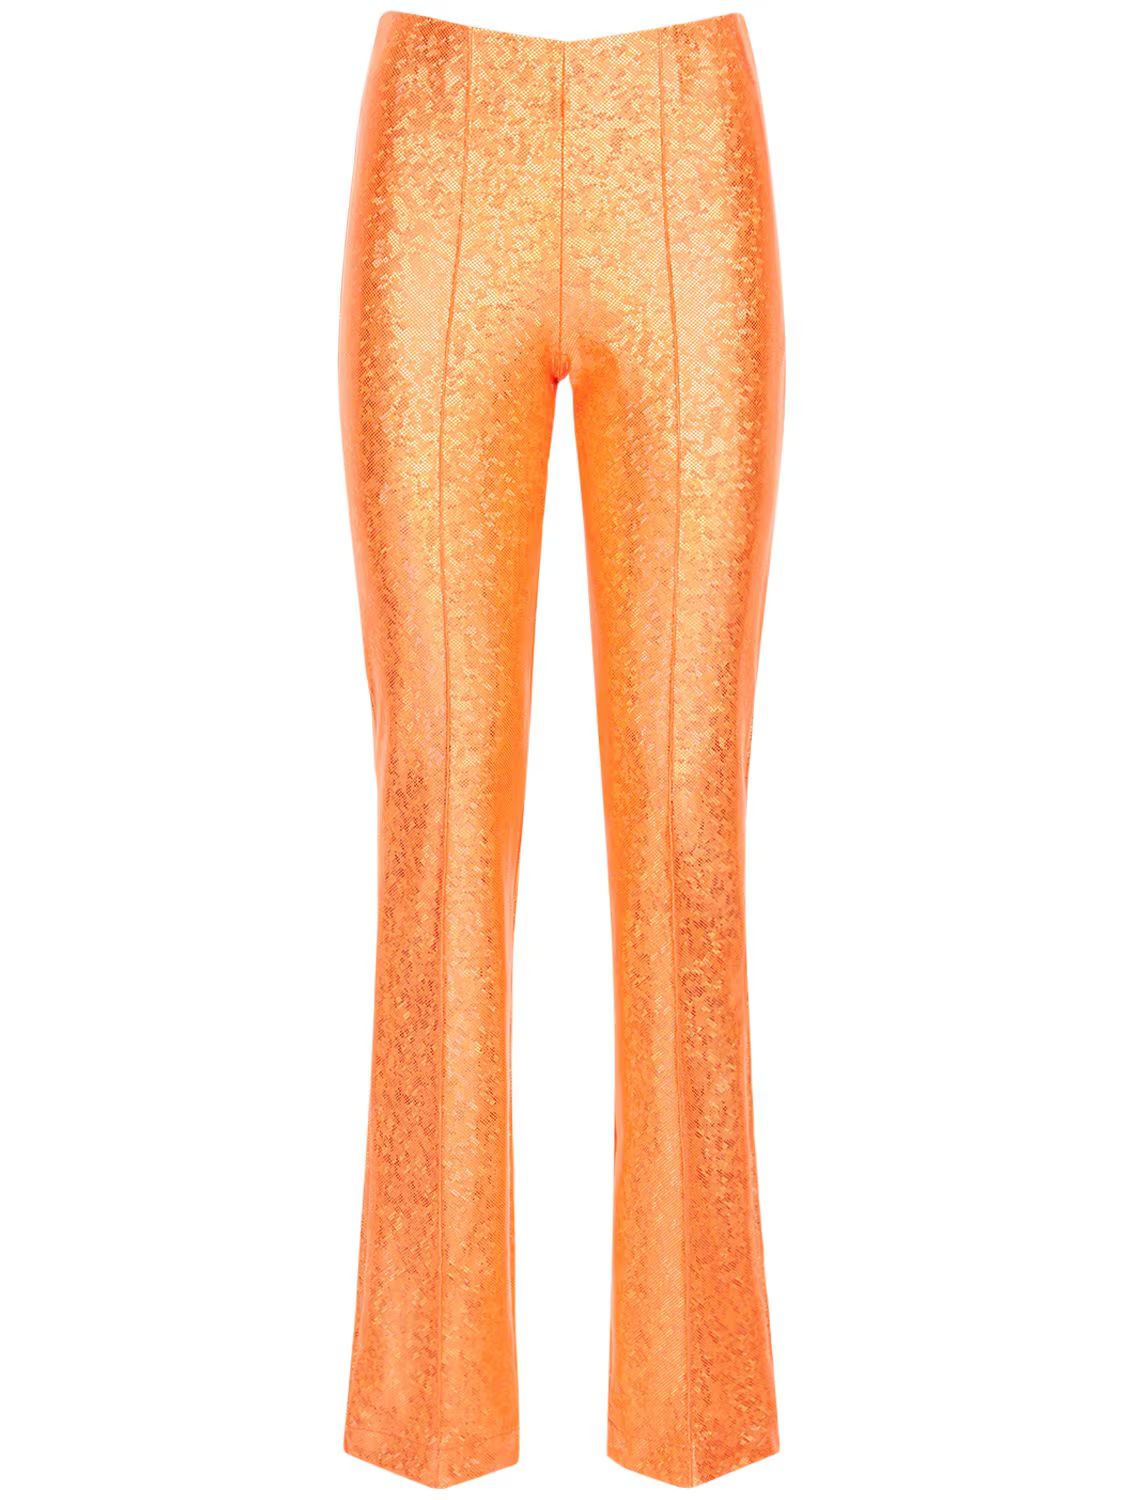 Glittered Stretch Jersey Pants | Luisaviaroma